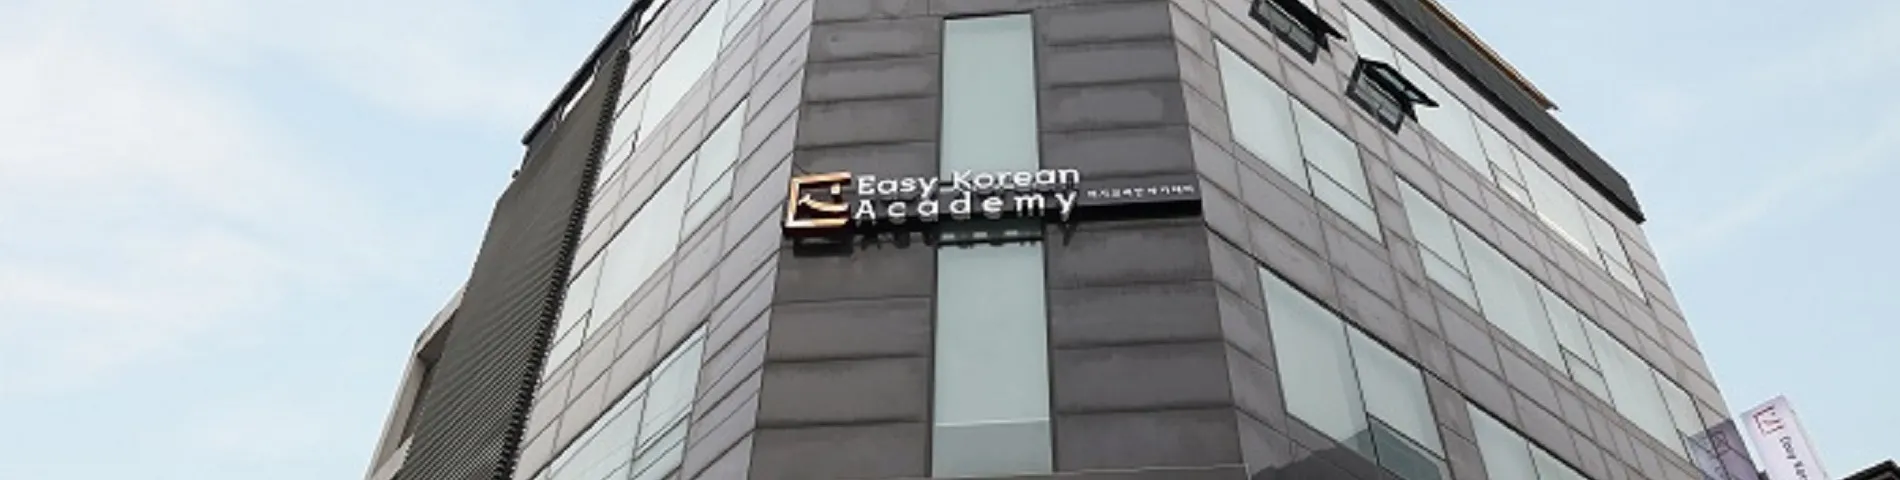 Imagen 1 de la escuela Easy Korean Academy